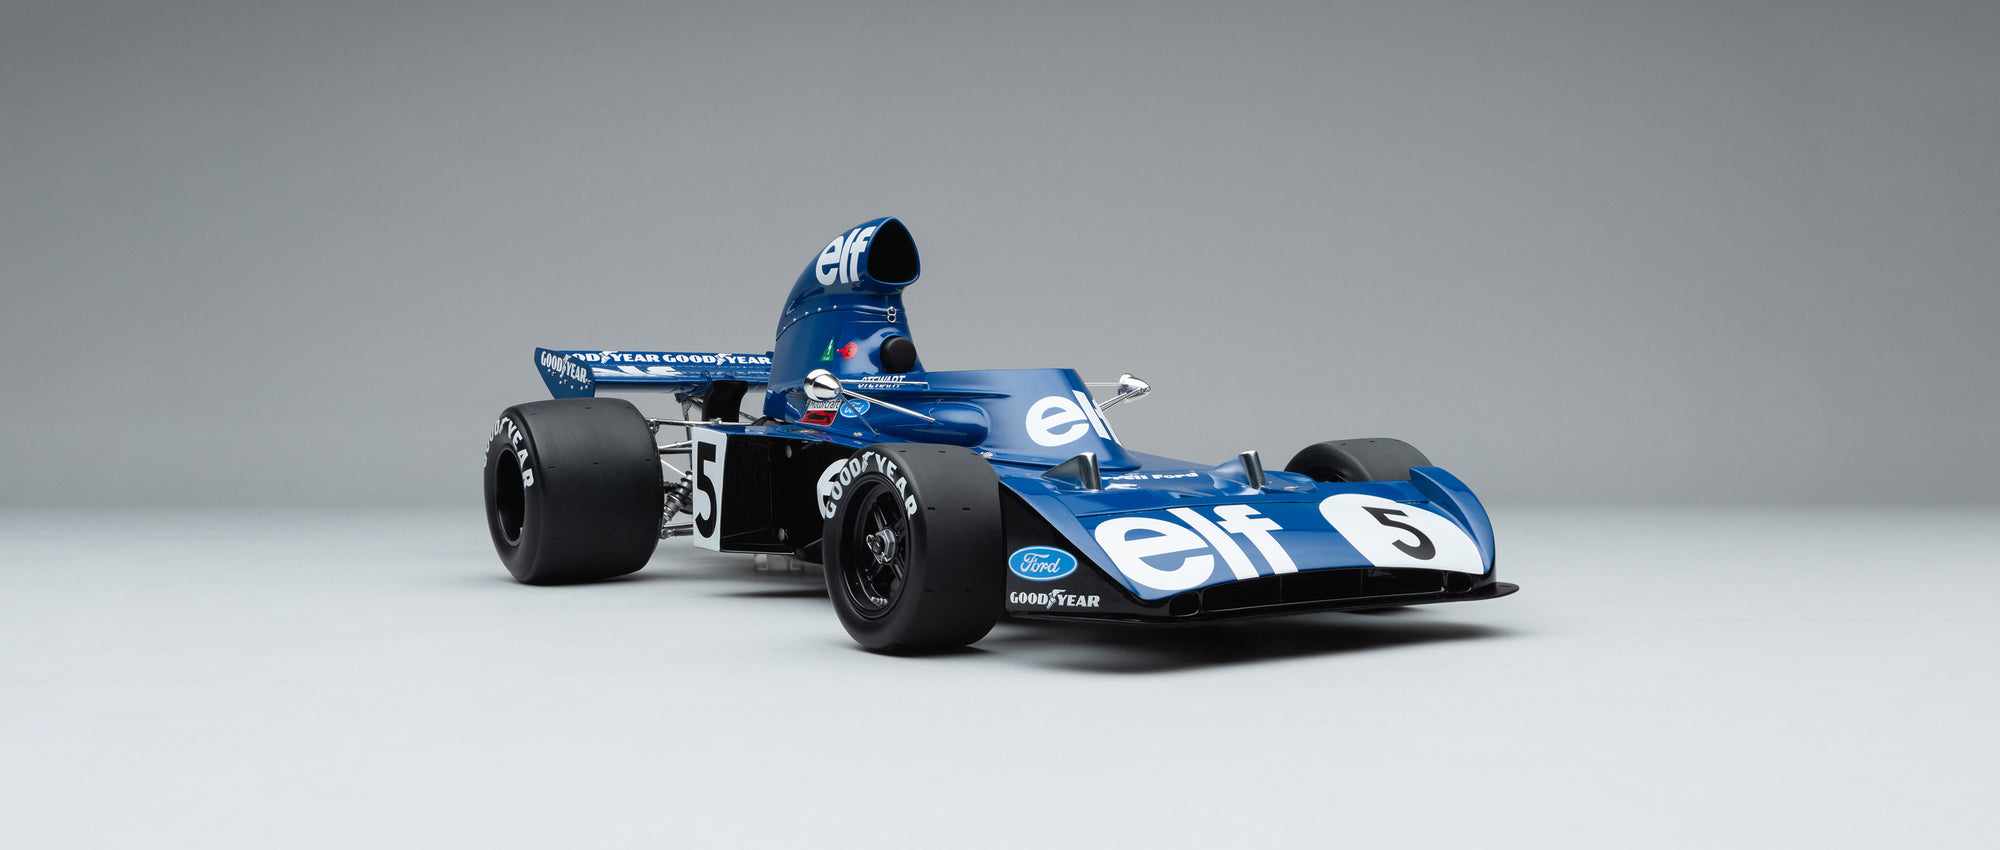 Elf Team Tyrrell 006 - 1973 Gran Premio de Alemania – Amalgam